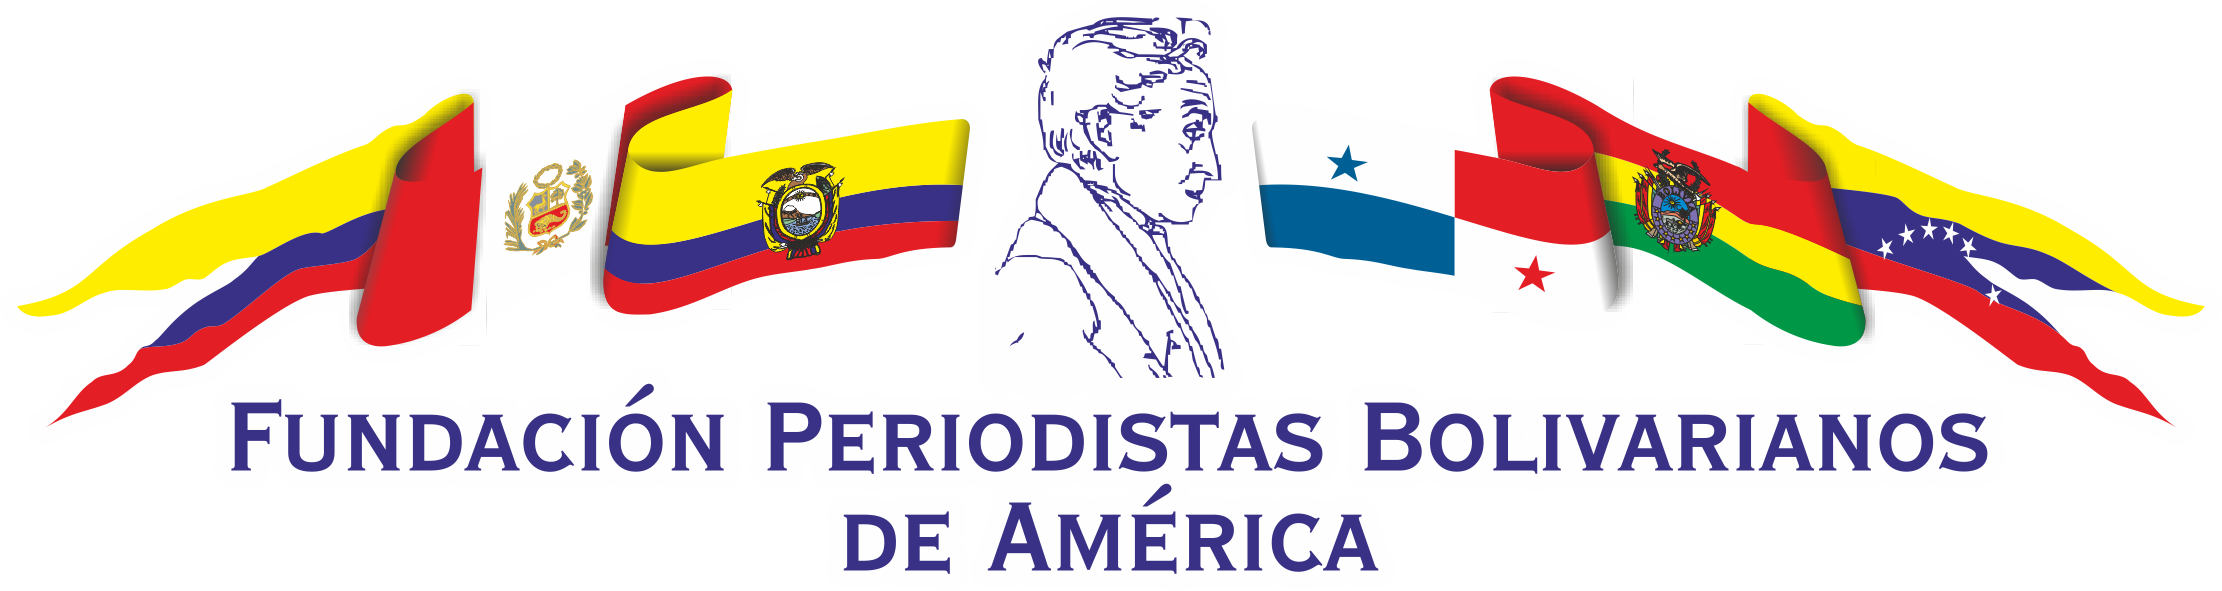 Fundación Periodistas Bolivarianos de América